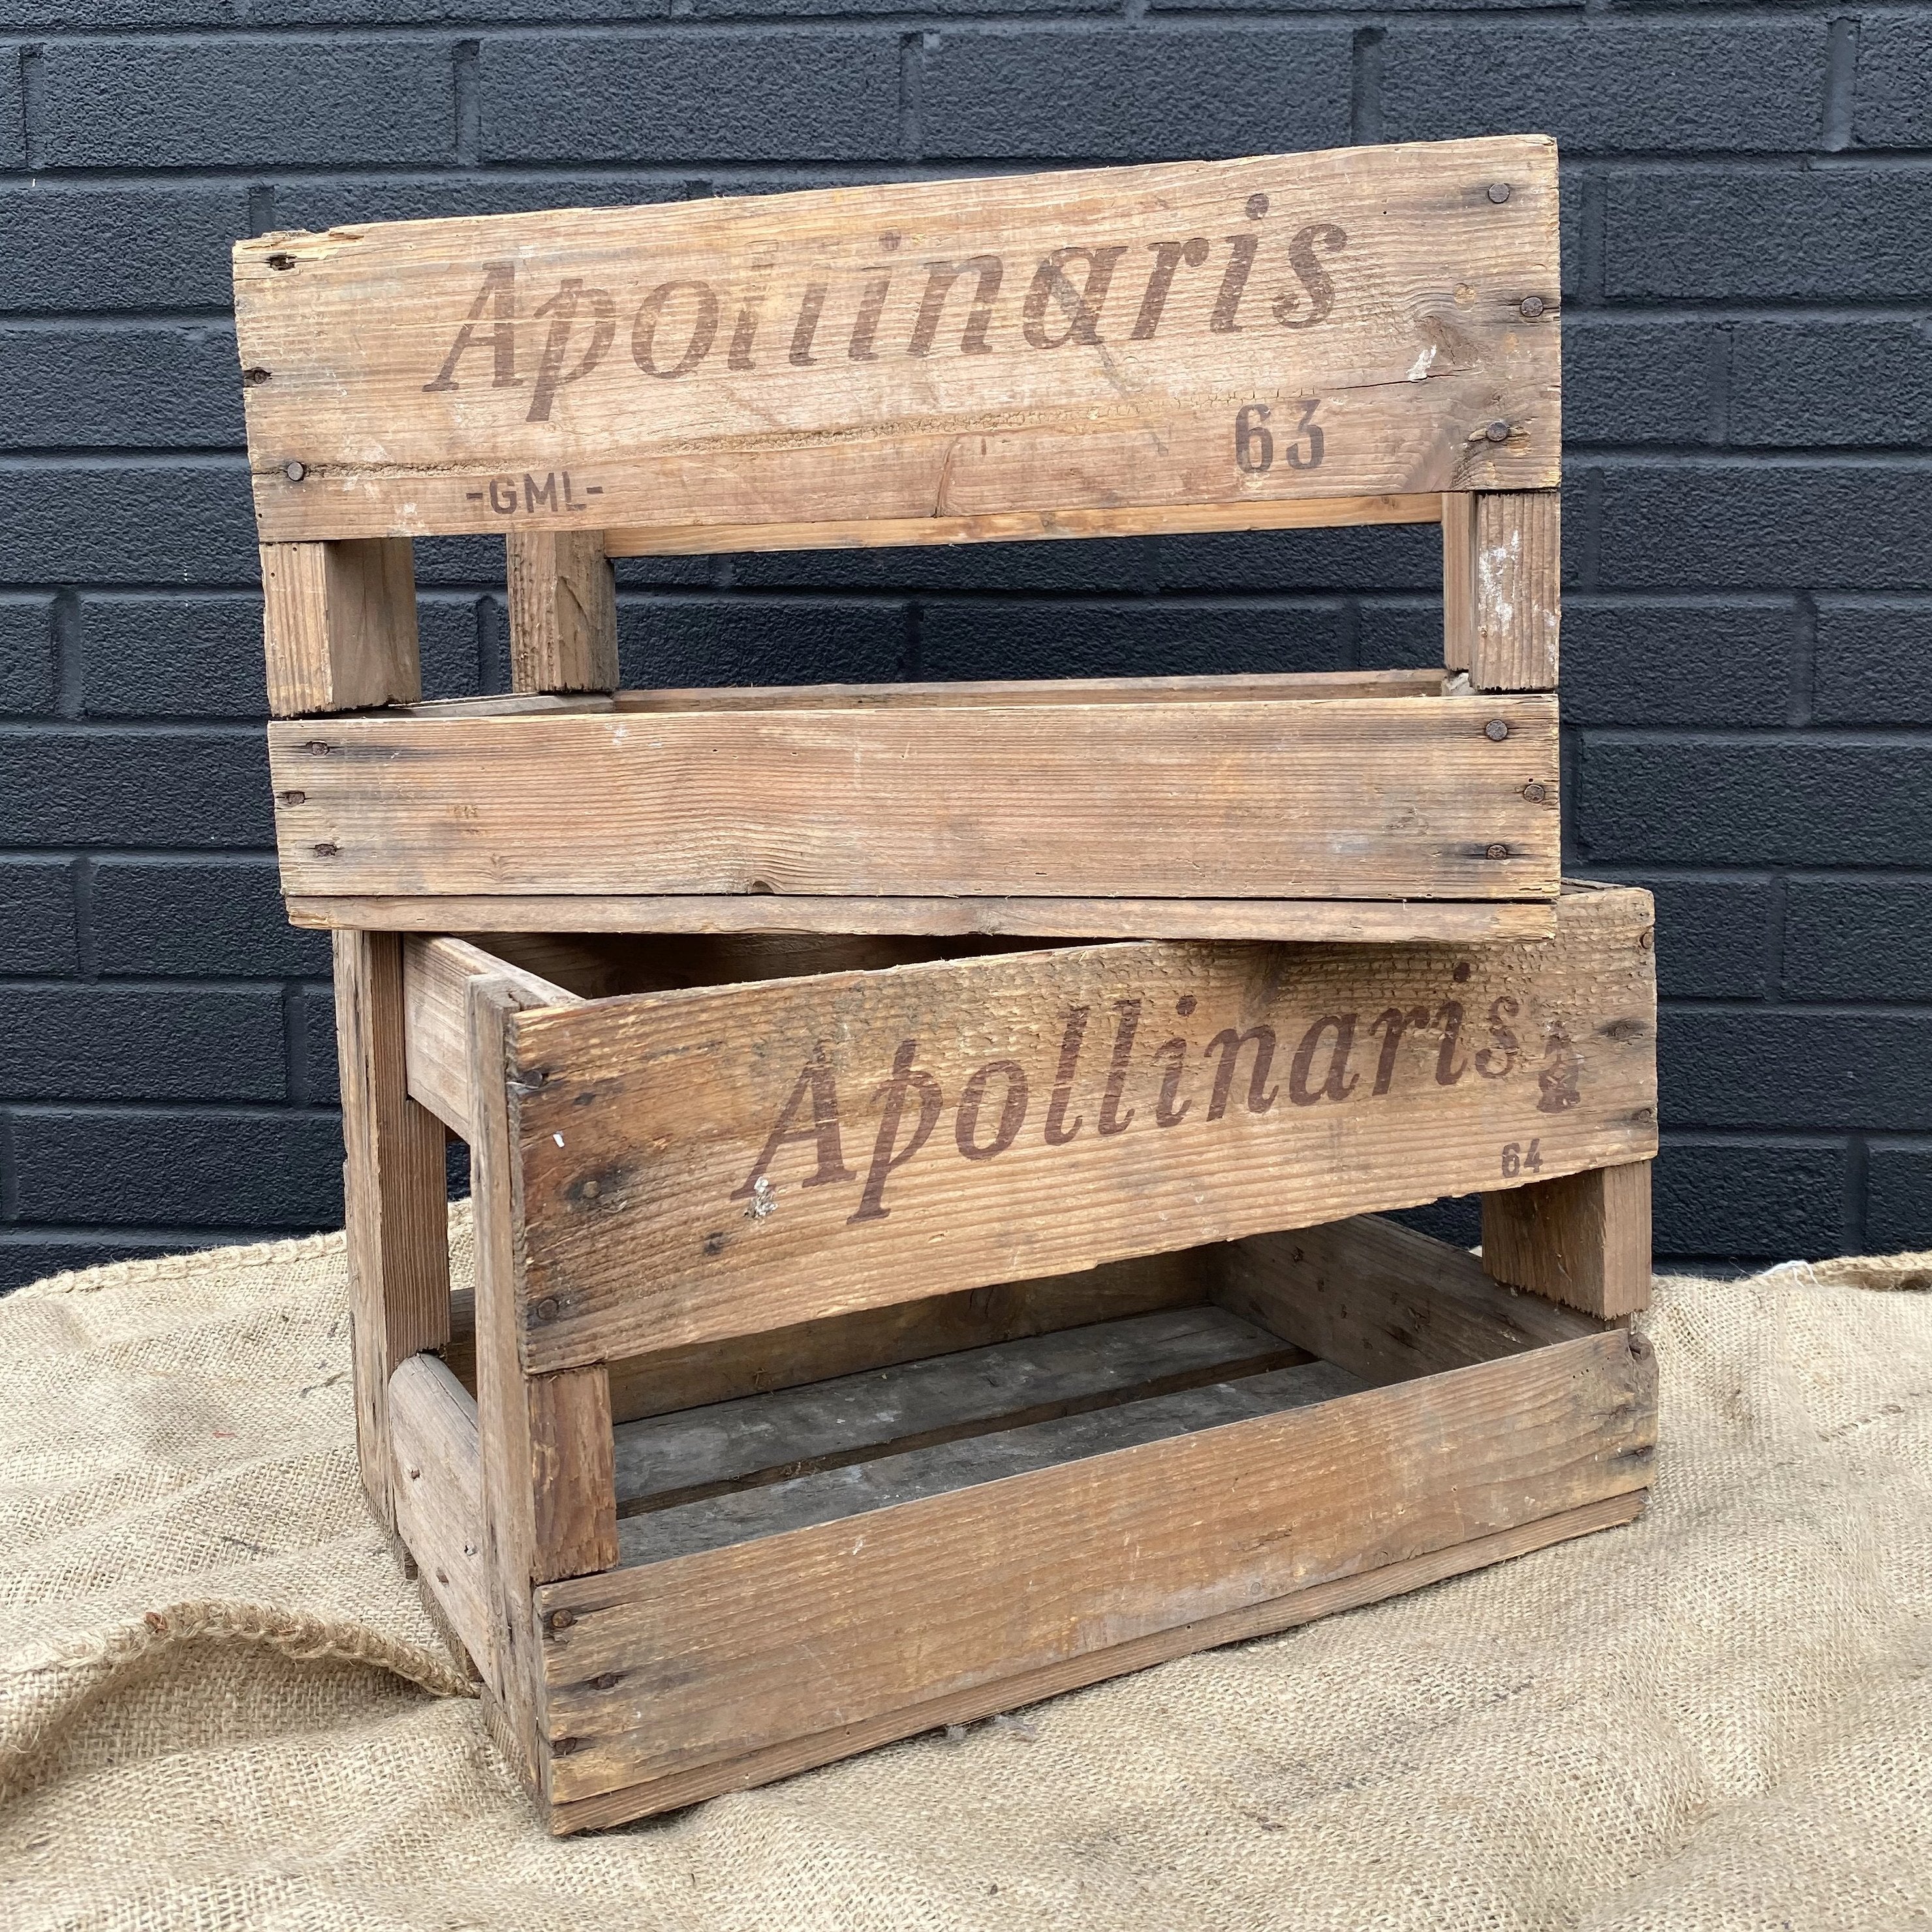 Apollinaris Crate